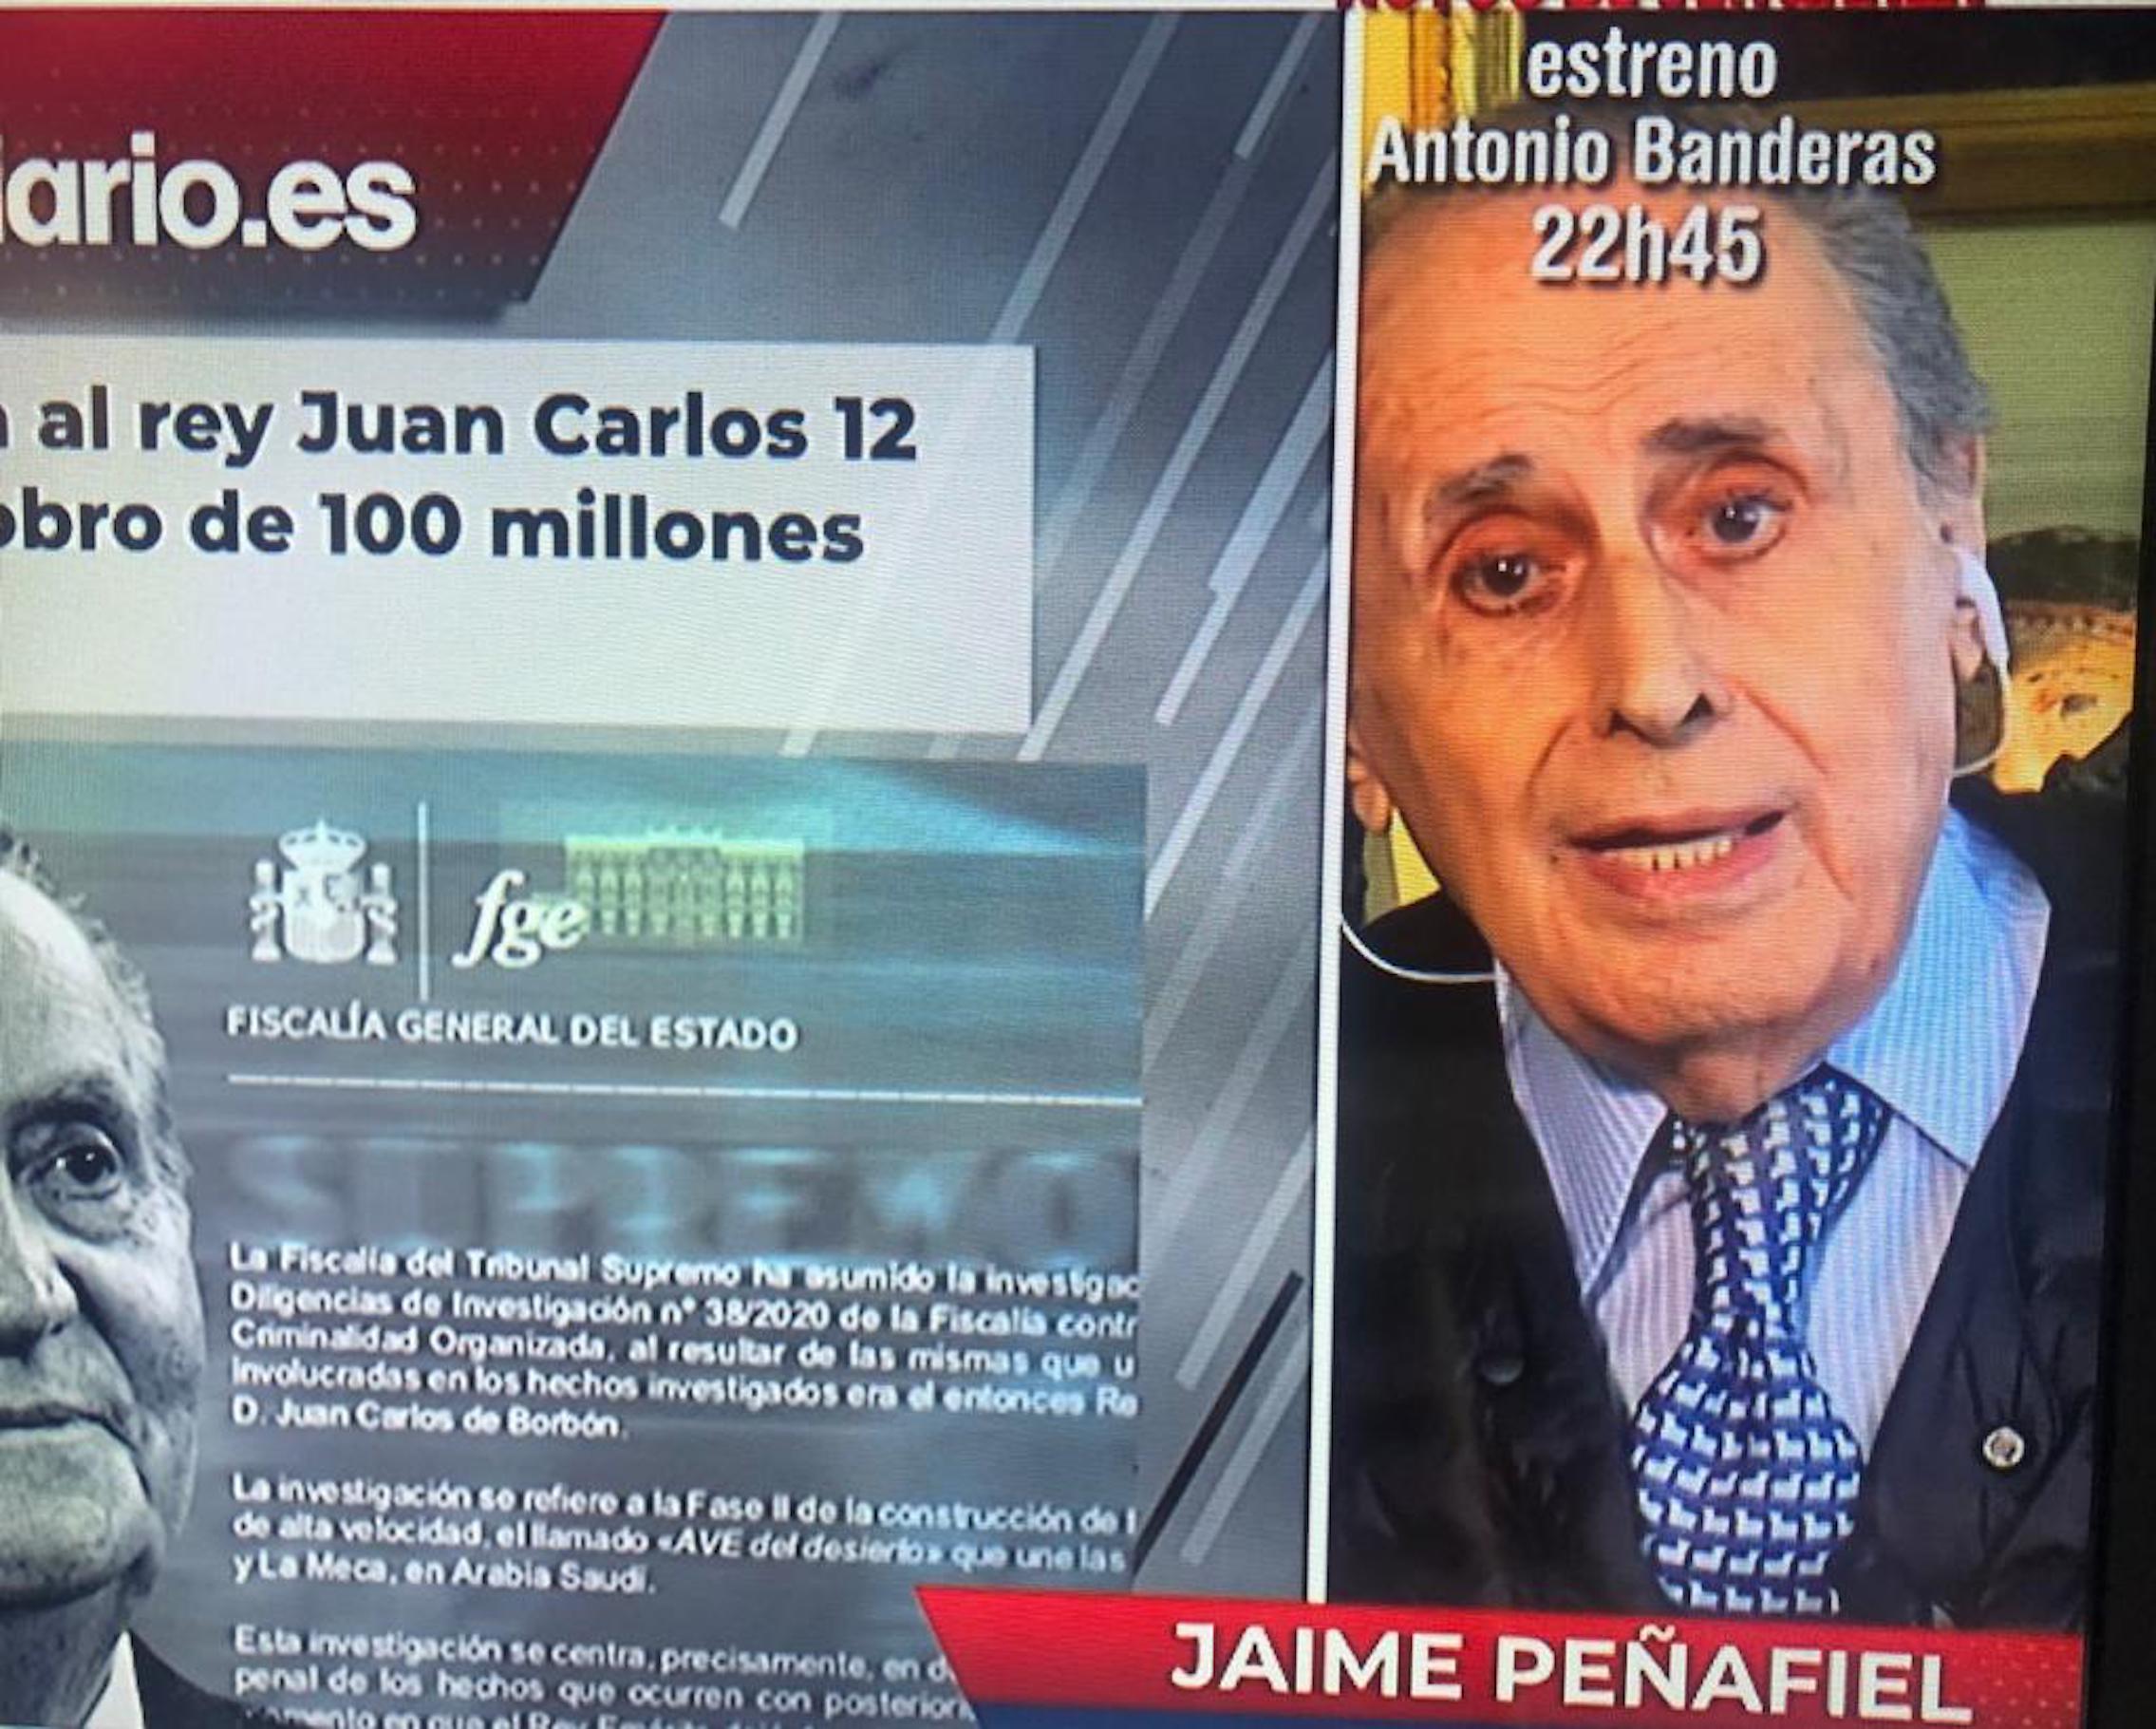 Peñafiel no calla més sobre Joan Carles I: cobdiciós "gracias a Franco"